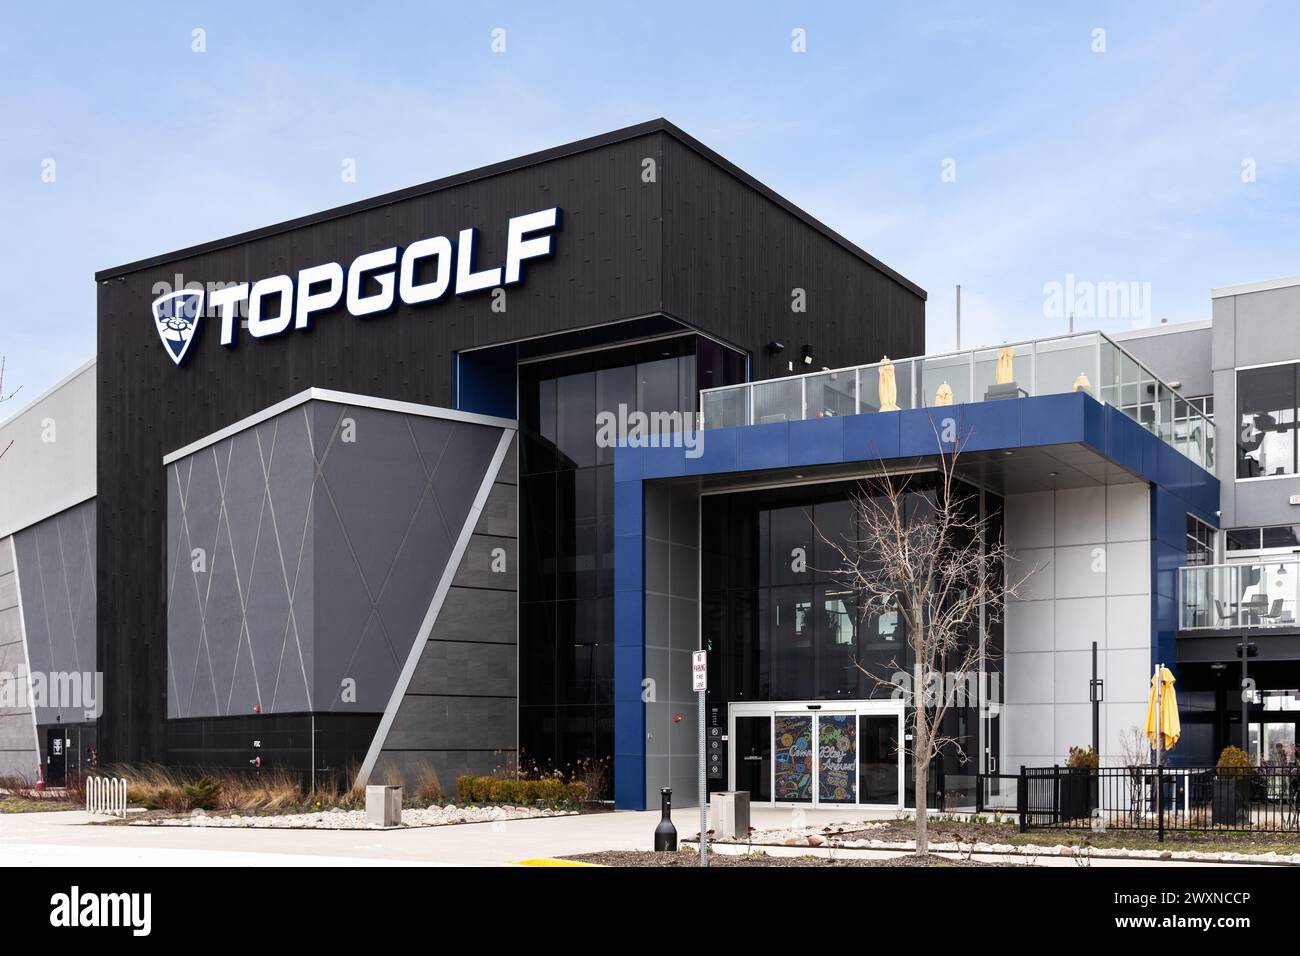 Topgolf verfügt über mehrere Stockwerke mit Driving Range Buchten und ist ein unterhaltsamer Unterhaltungskomplex für alle Altersgruppen. Stockfoto